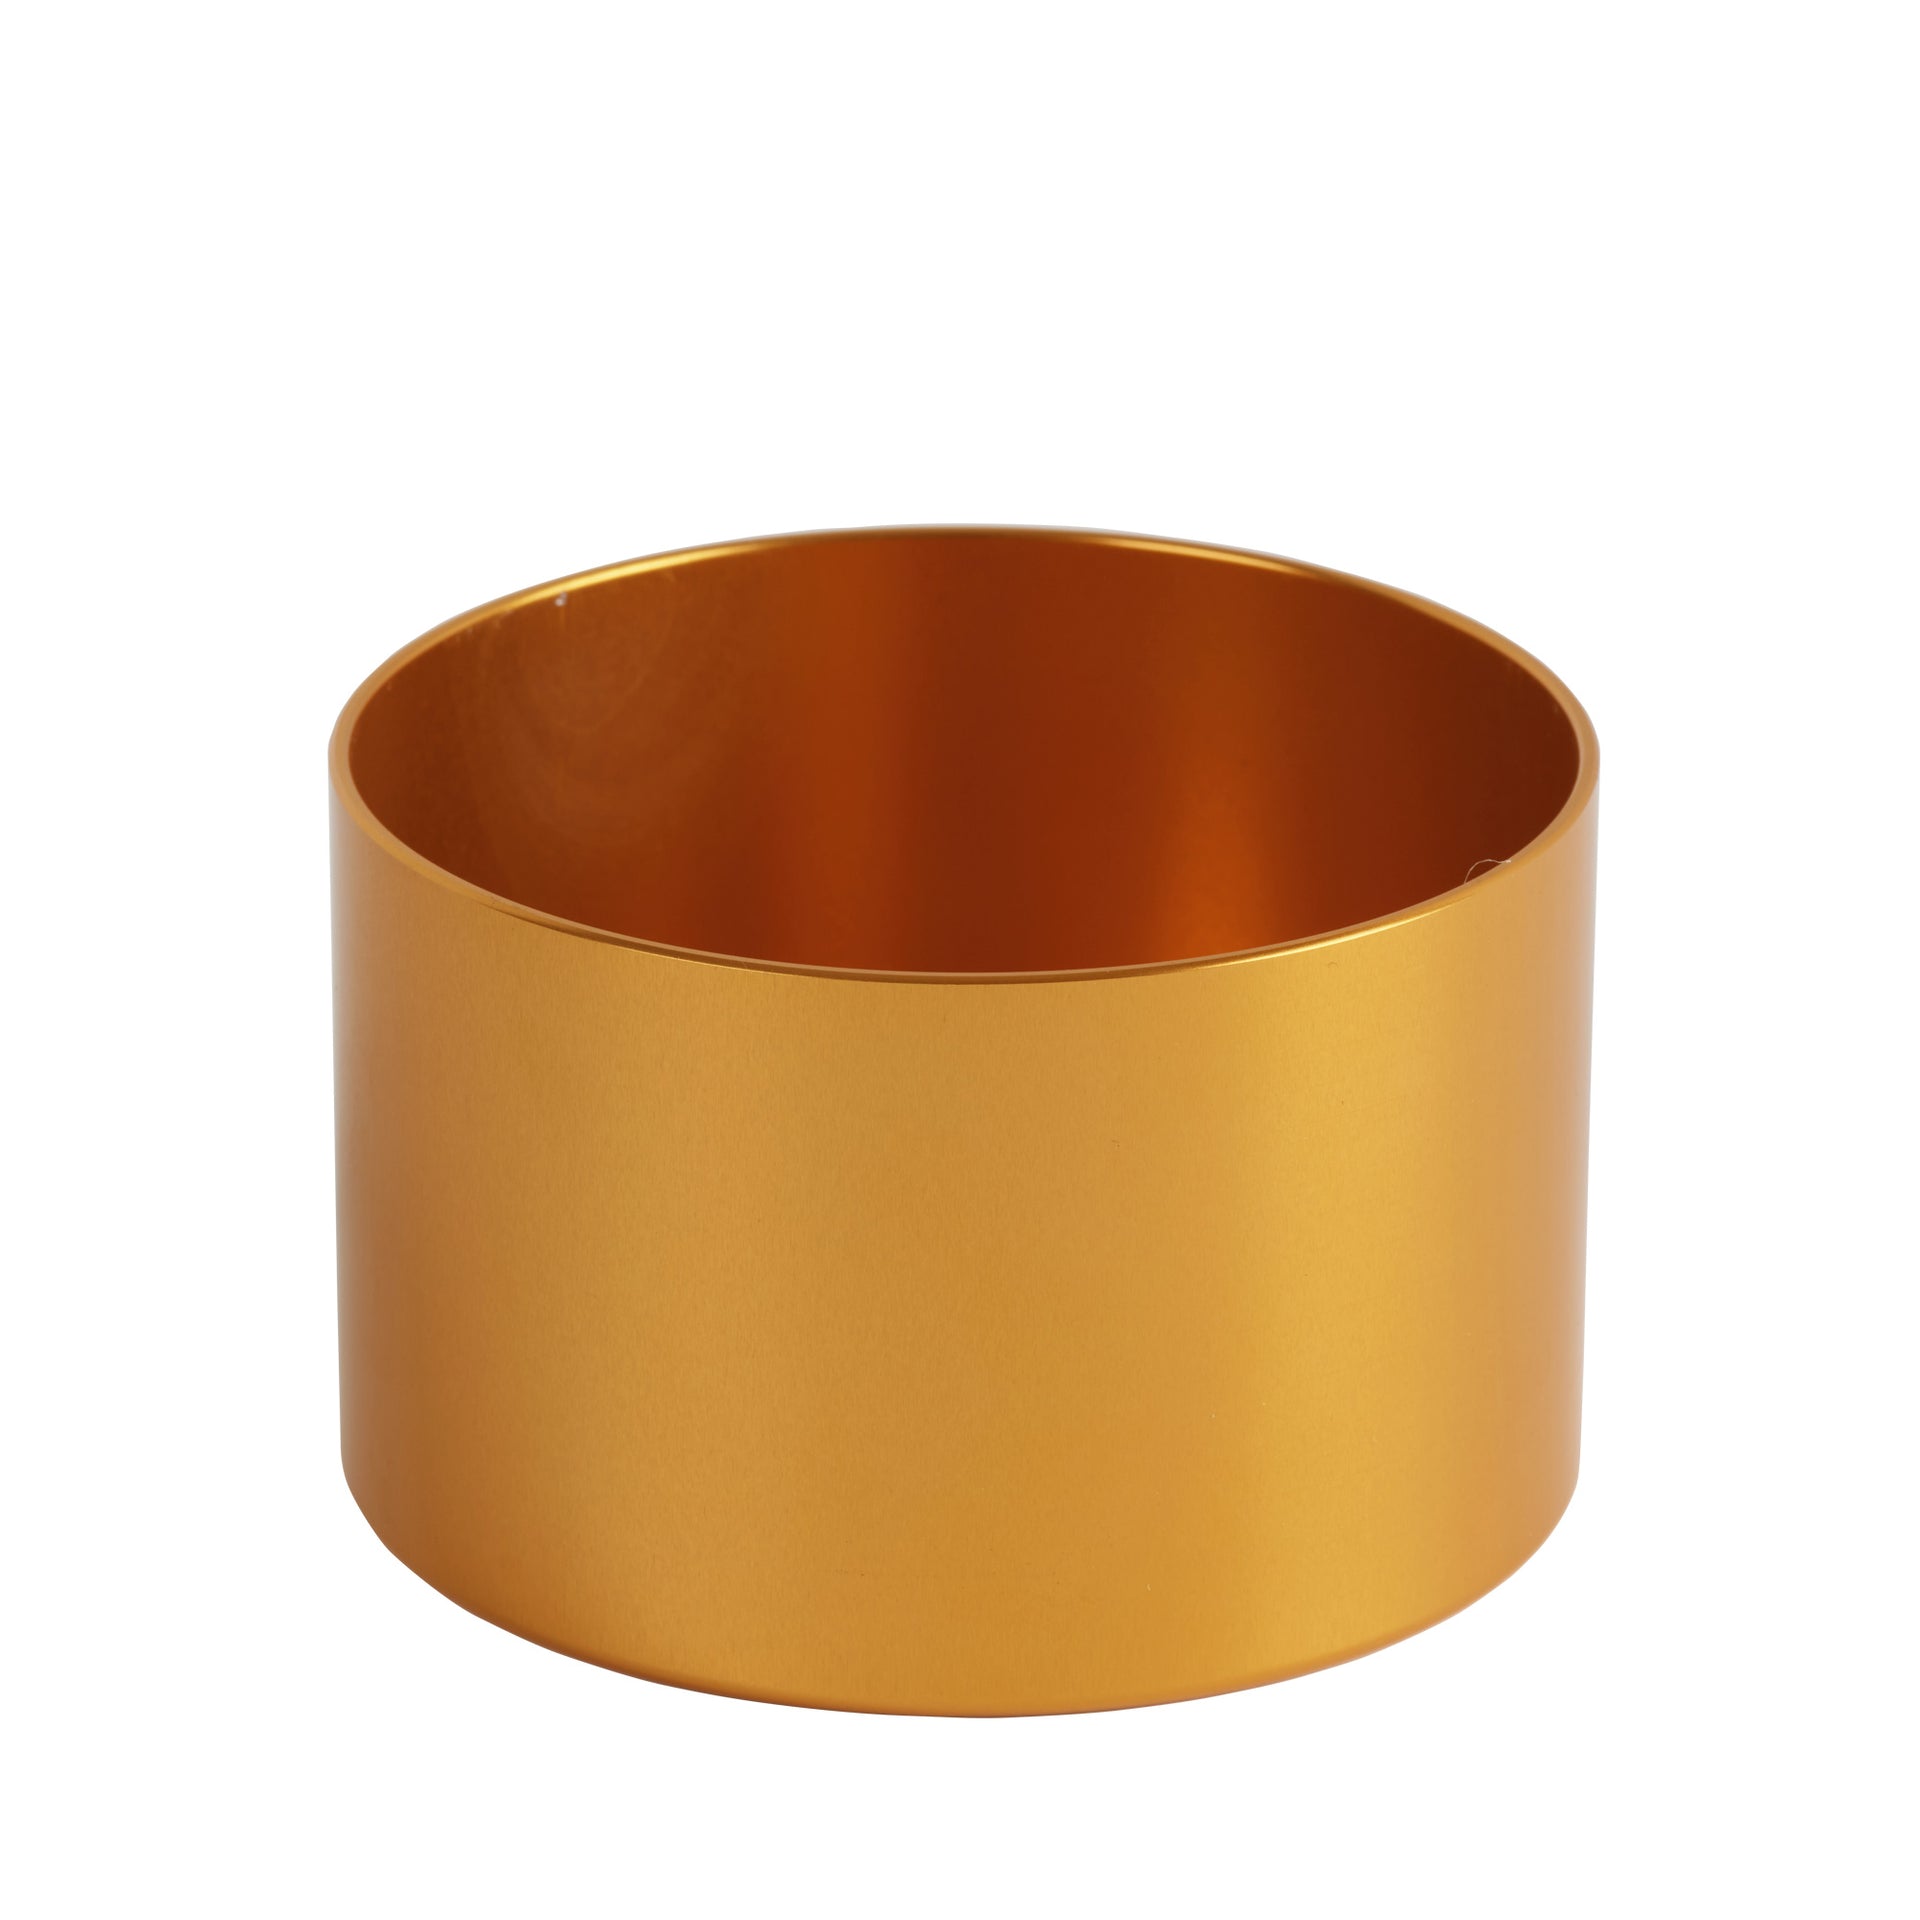 https://bondimagnets.com/cdn/shop/files/fishing-magnet-cover-the-bondi-gold.jpg?v=1698760326&width=1920